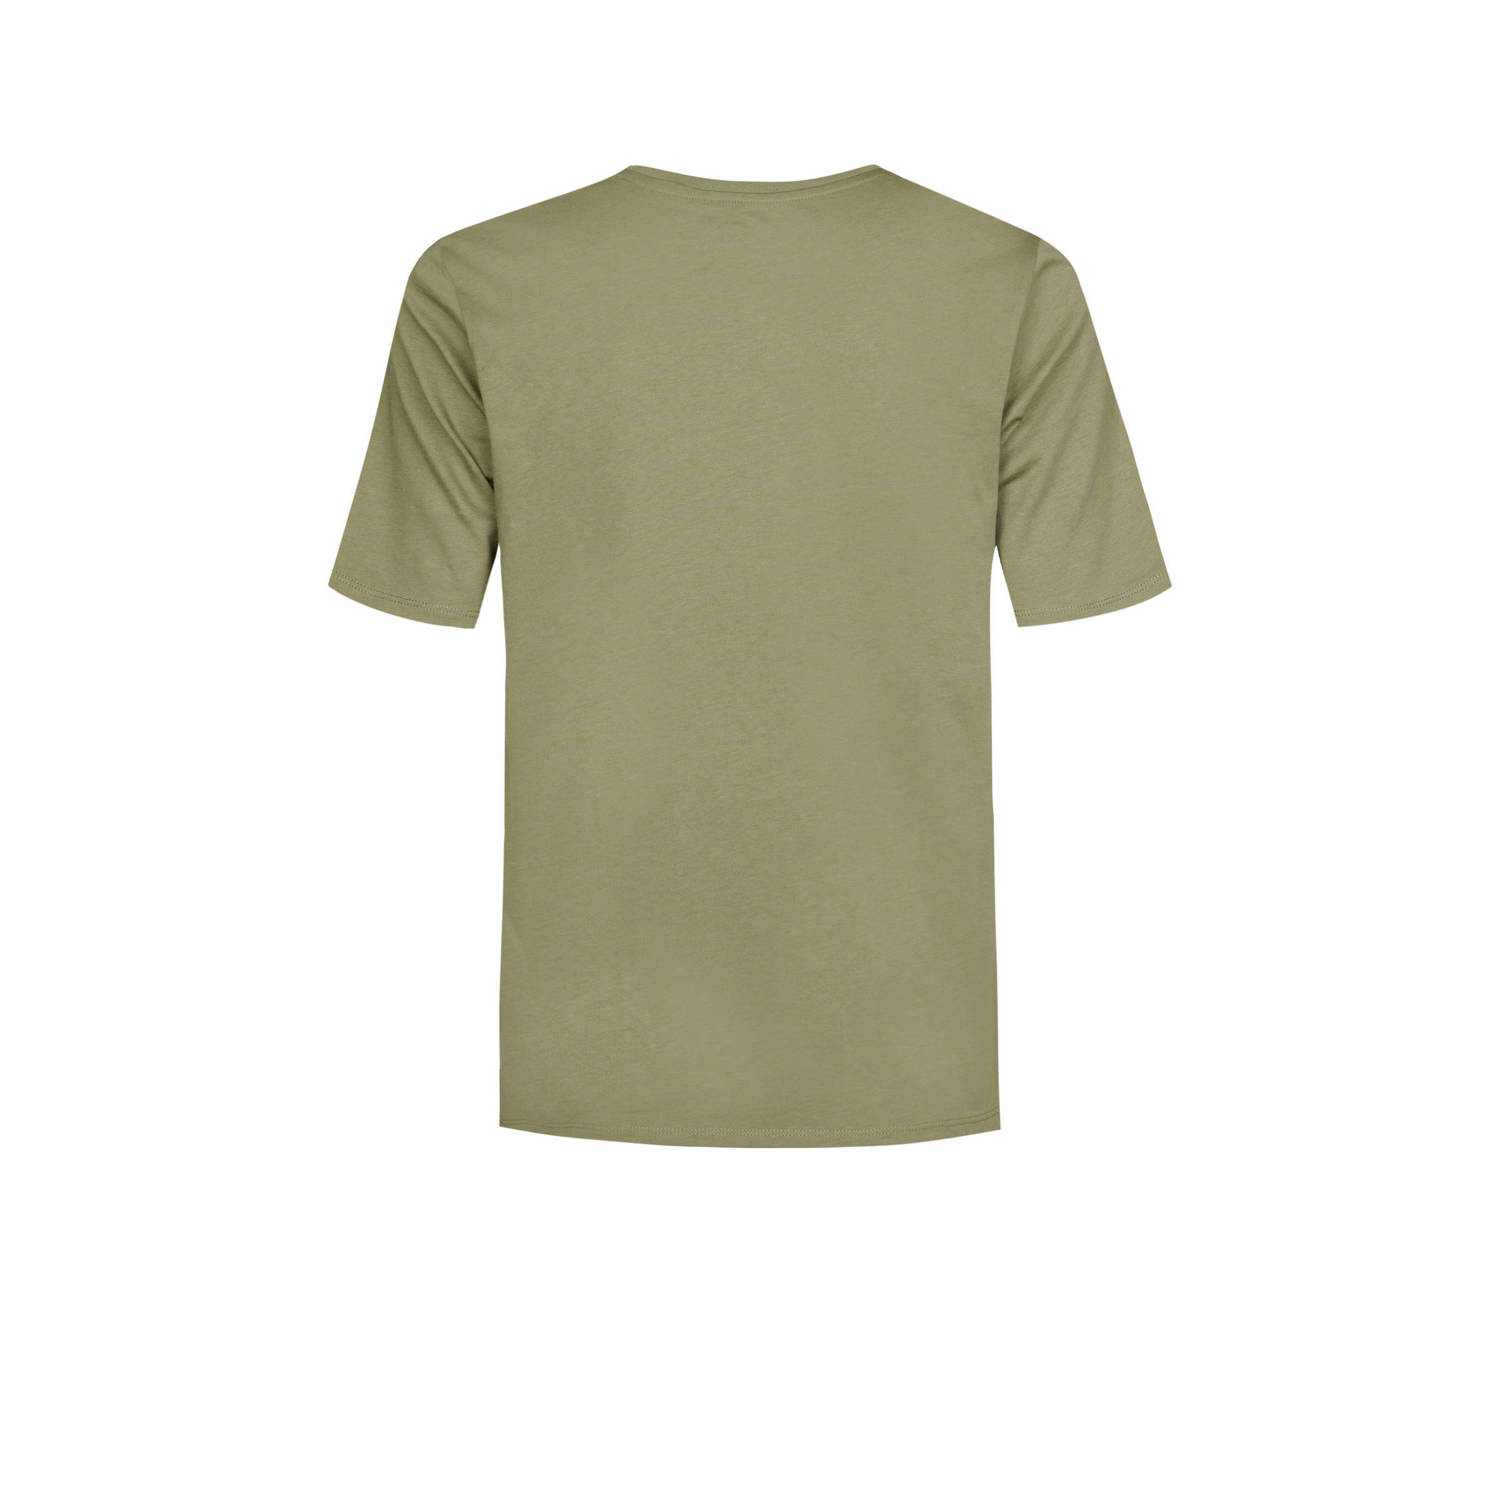 Timberland T-shirt met logo groen